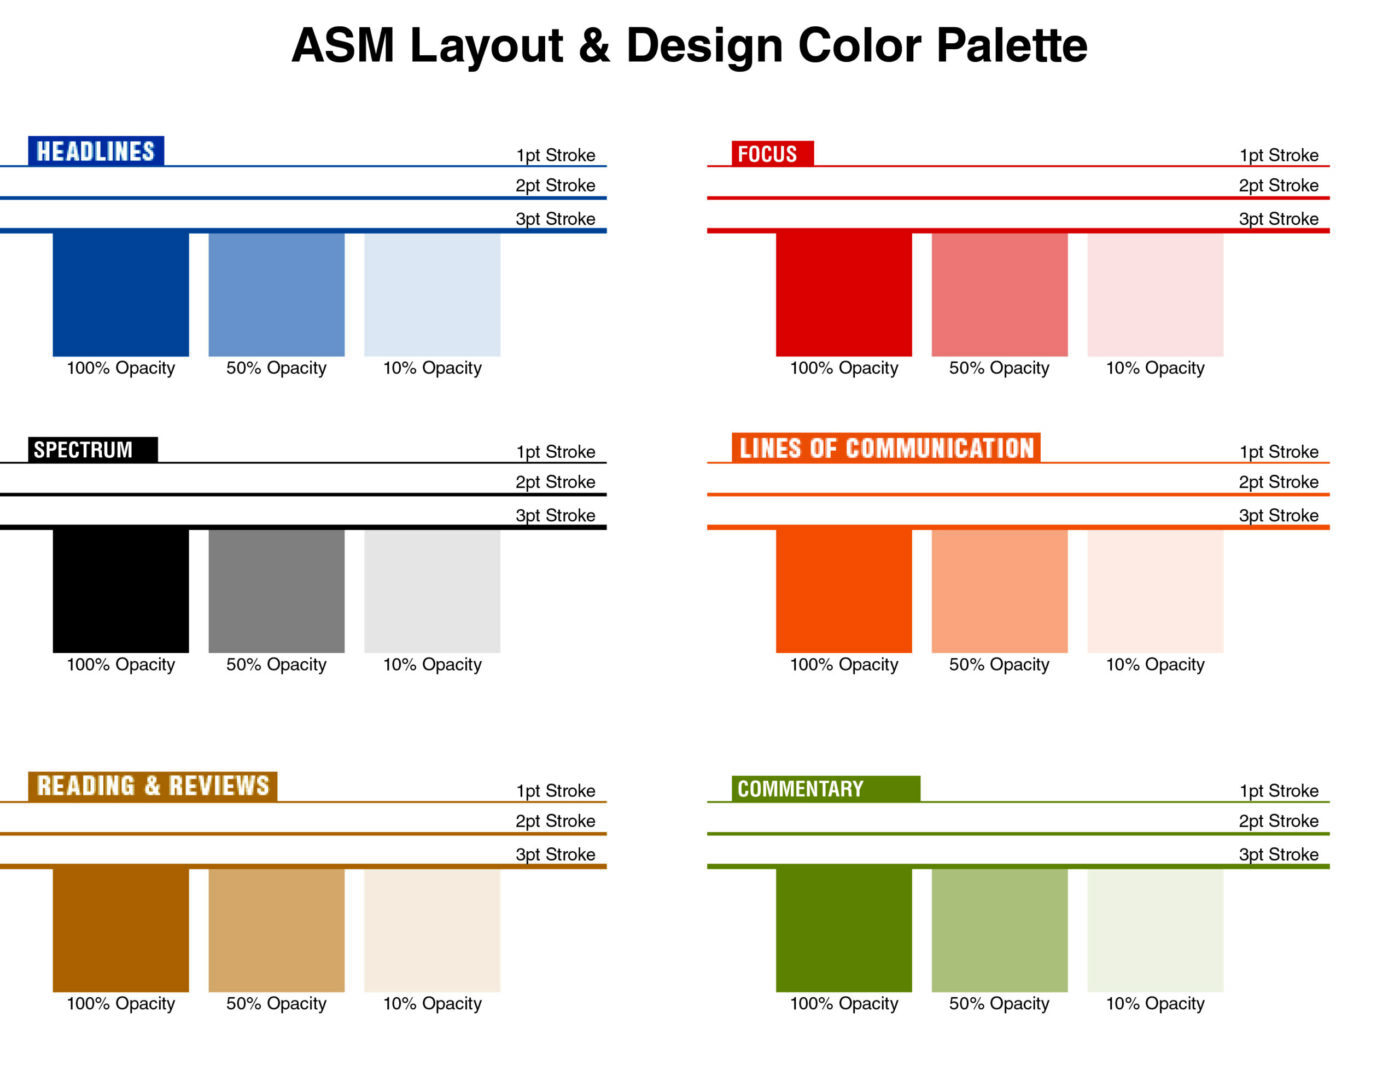 ASM Layout & Design Color Palette